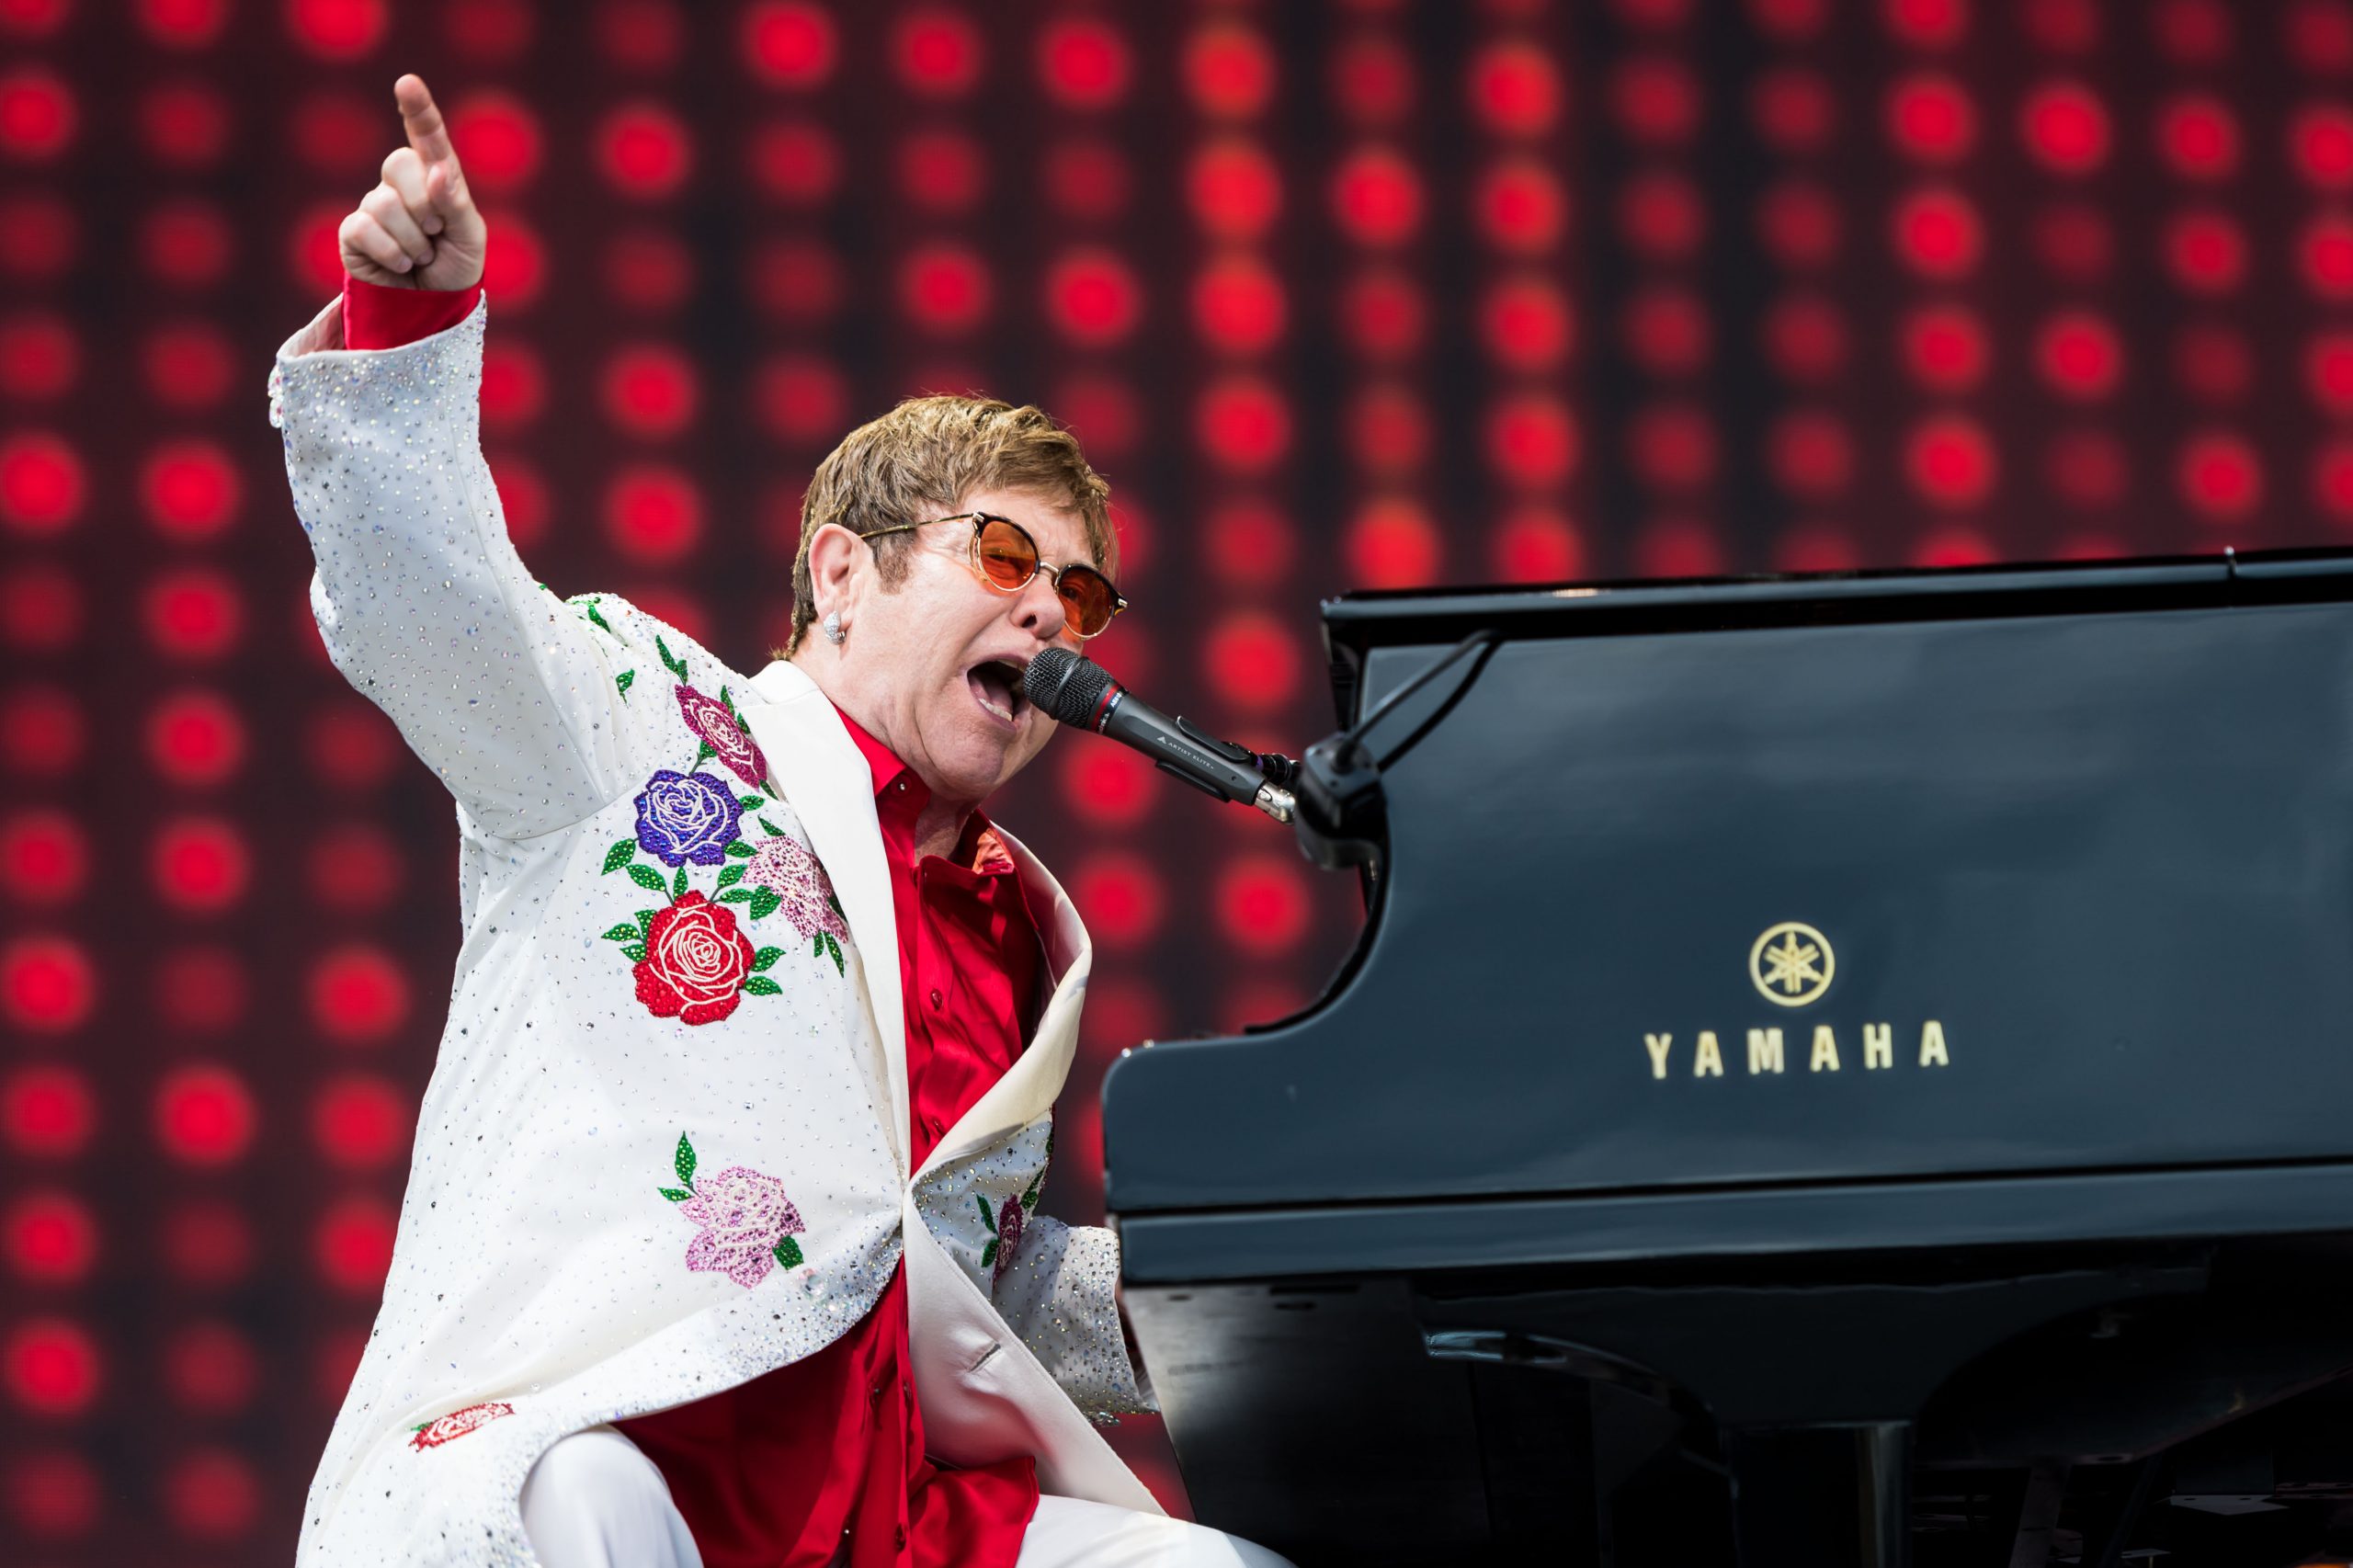 Elton John photo